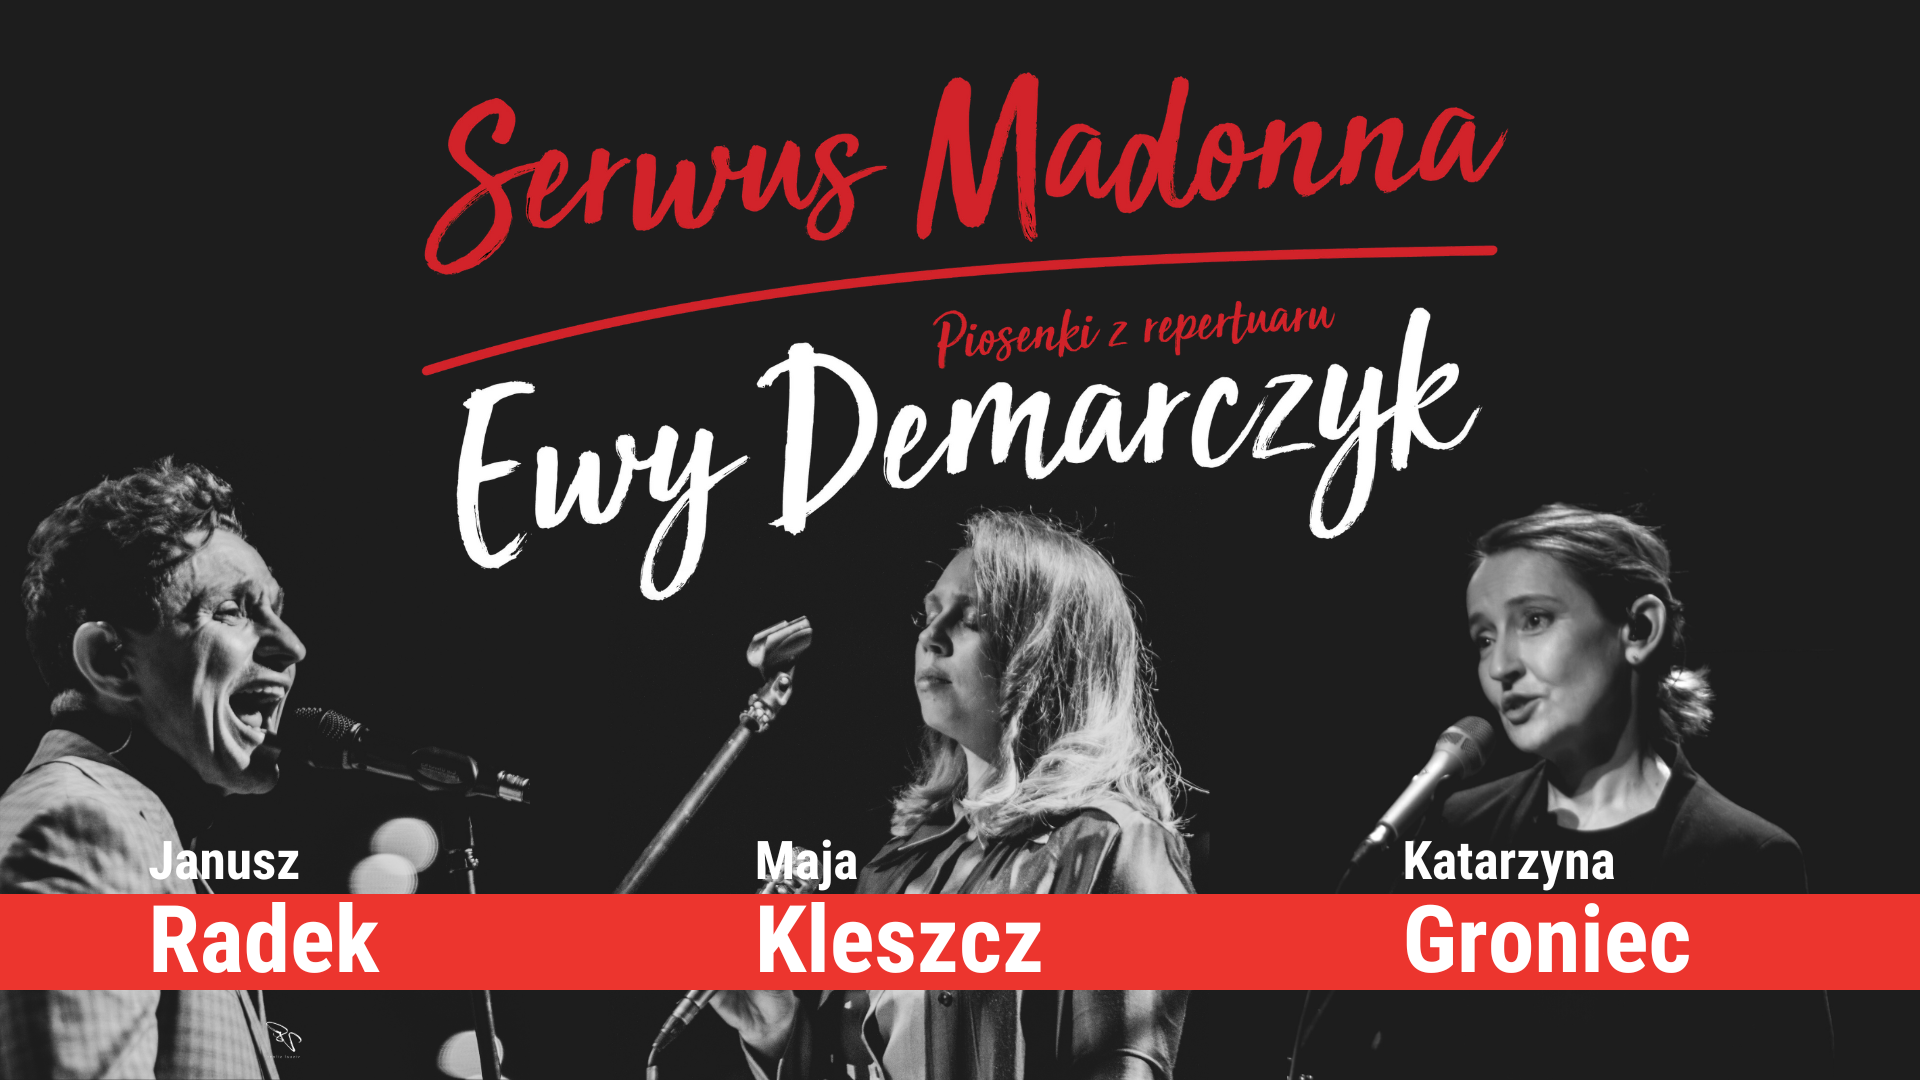 plakat koncertu pt. "Serwus Madonna" z fotografiami wokalistów - od lewej Janusz Radek, Maja Kleszcz, Katarzyna Groniec